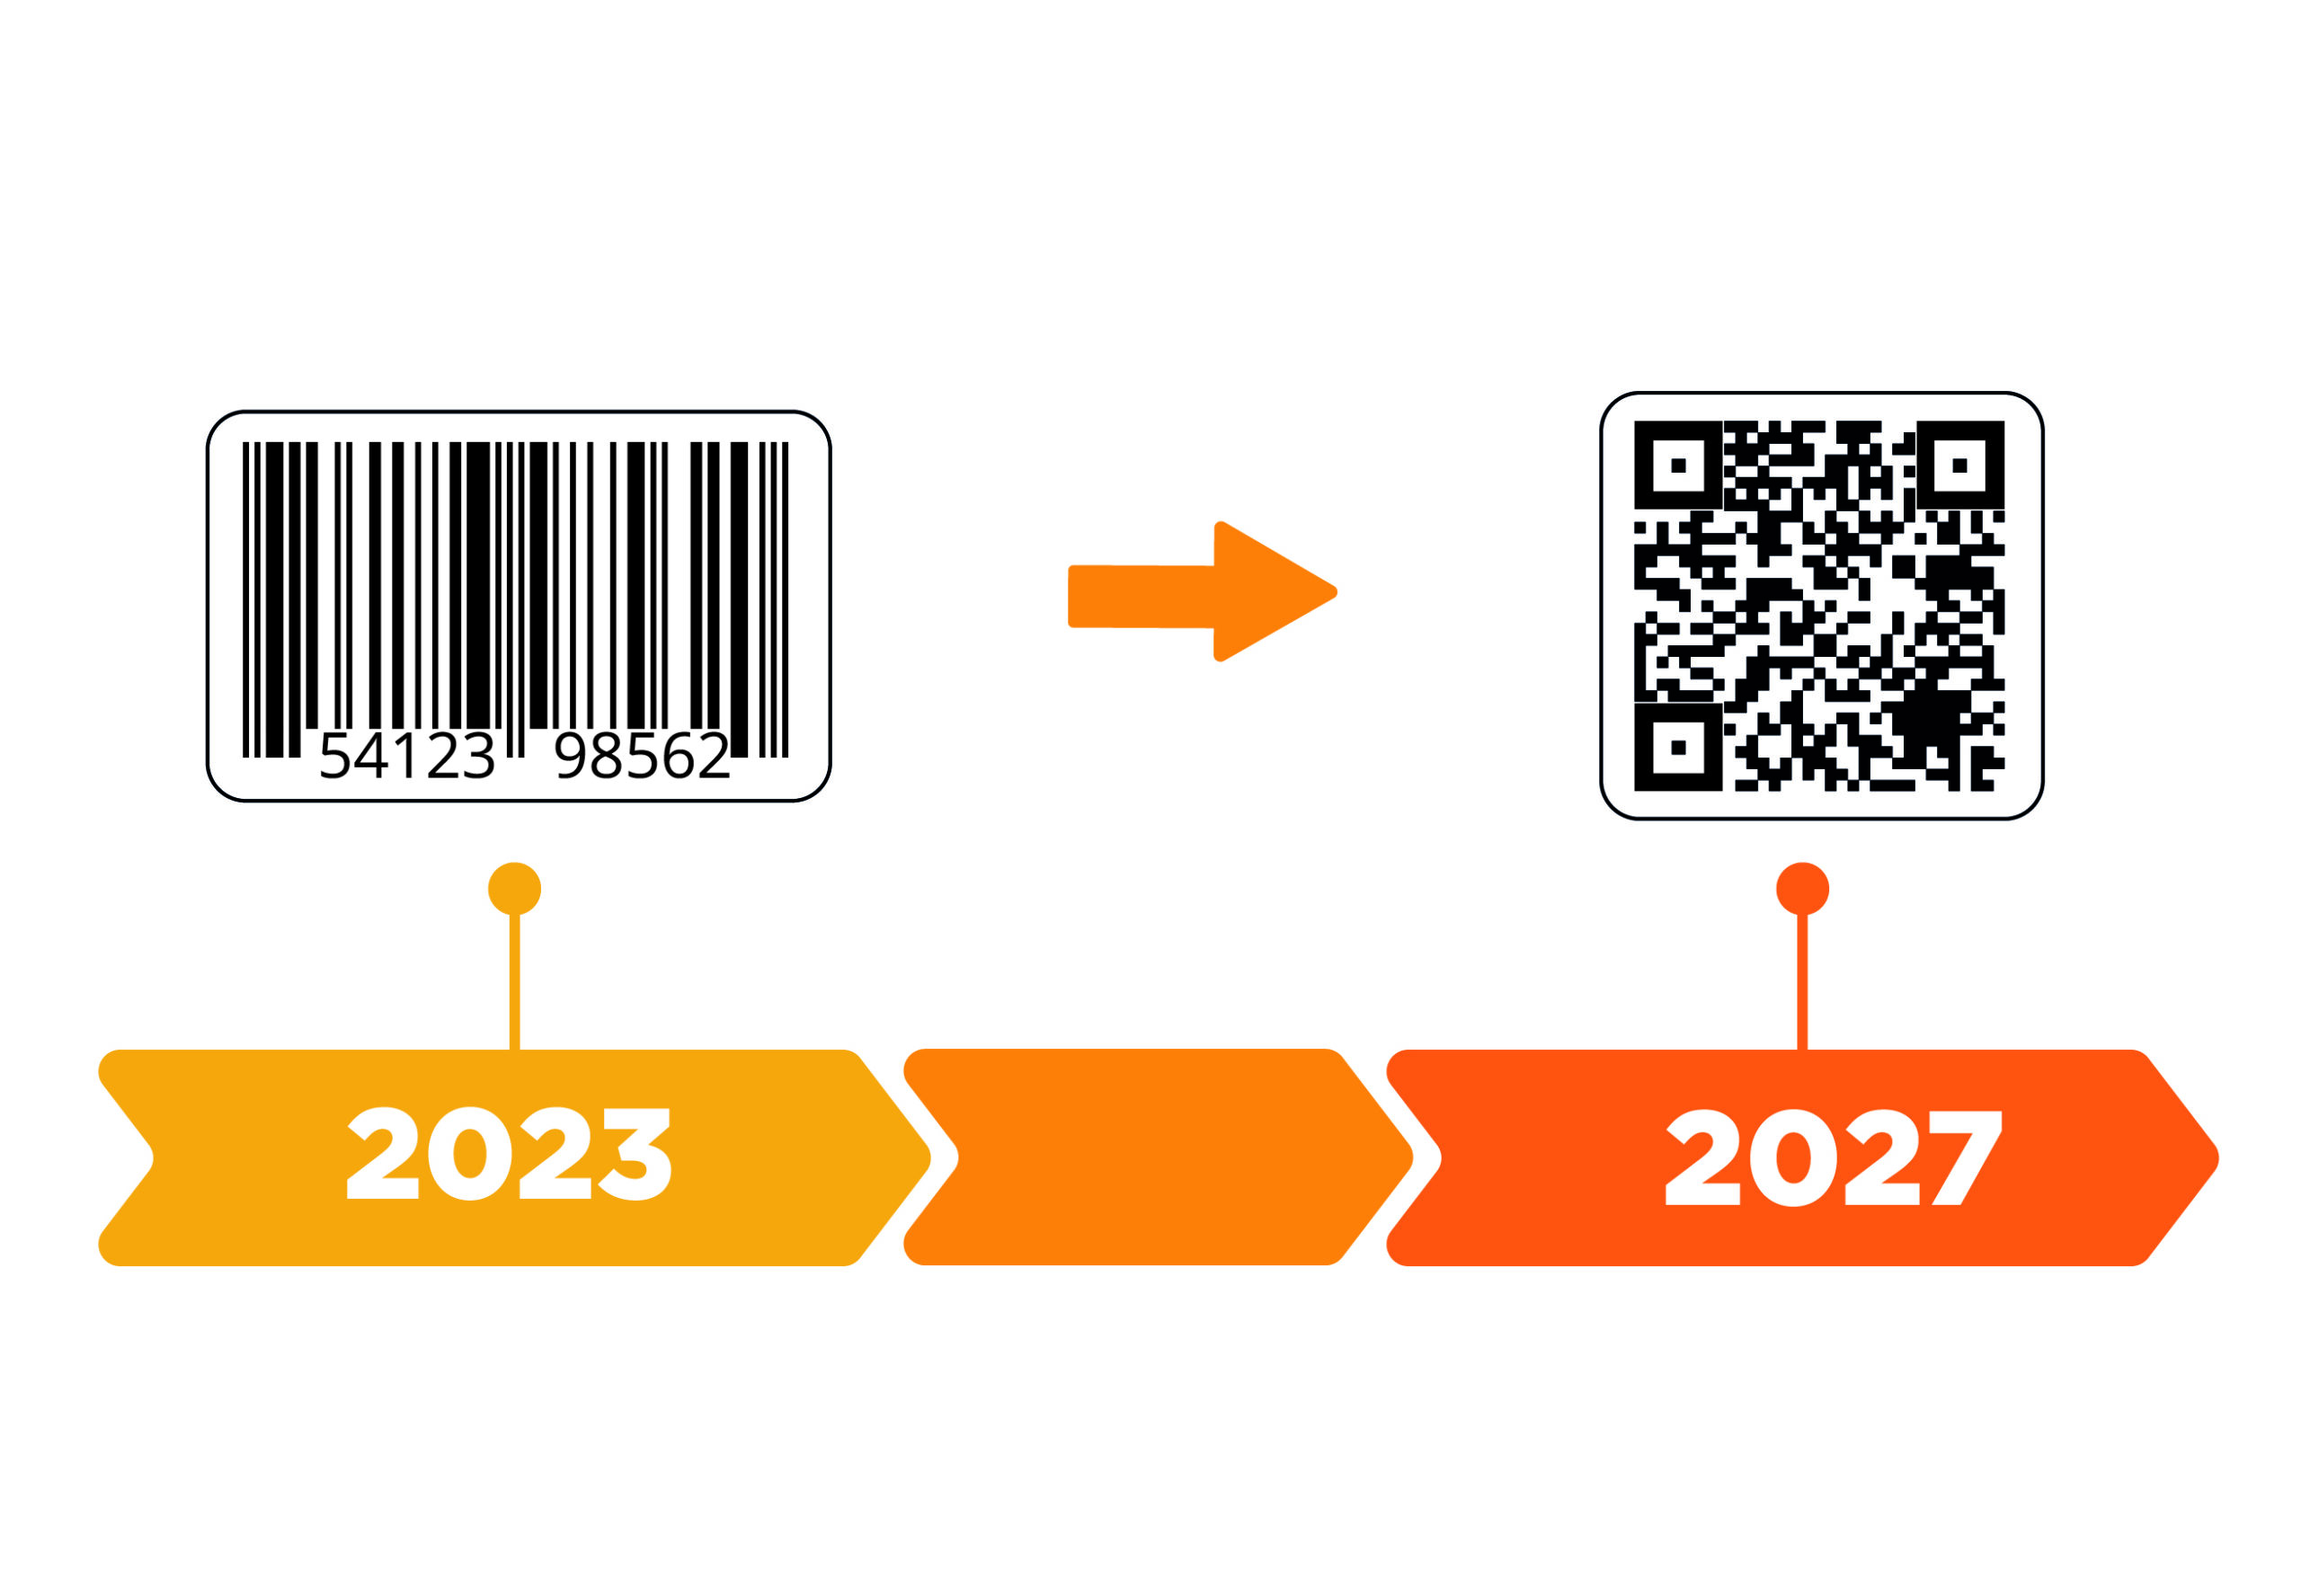 Le QR code remplace les codes-barres en 2027.